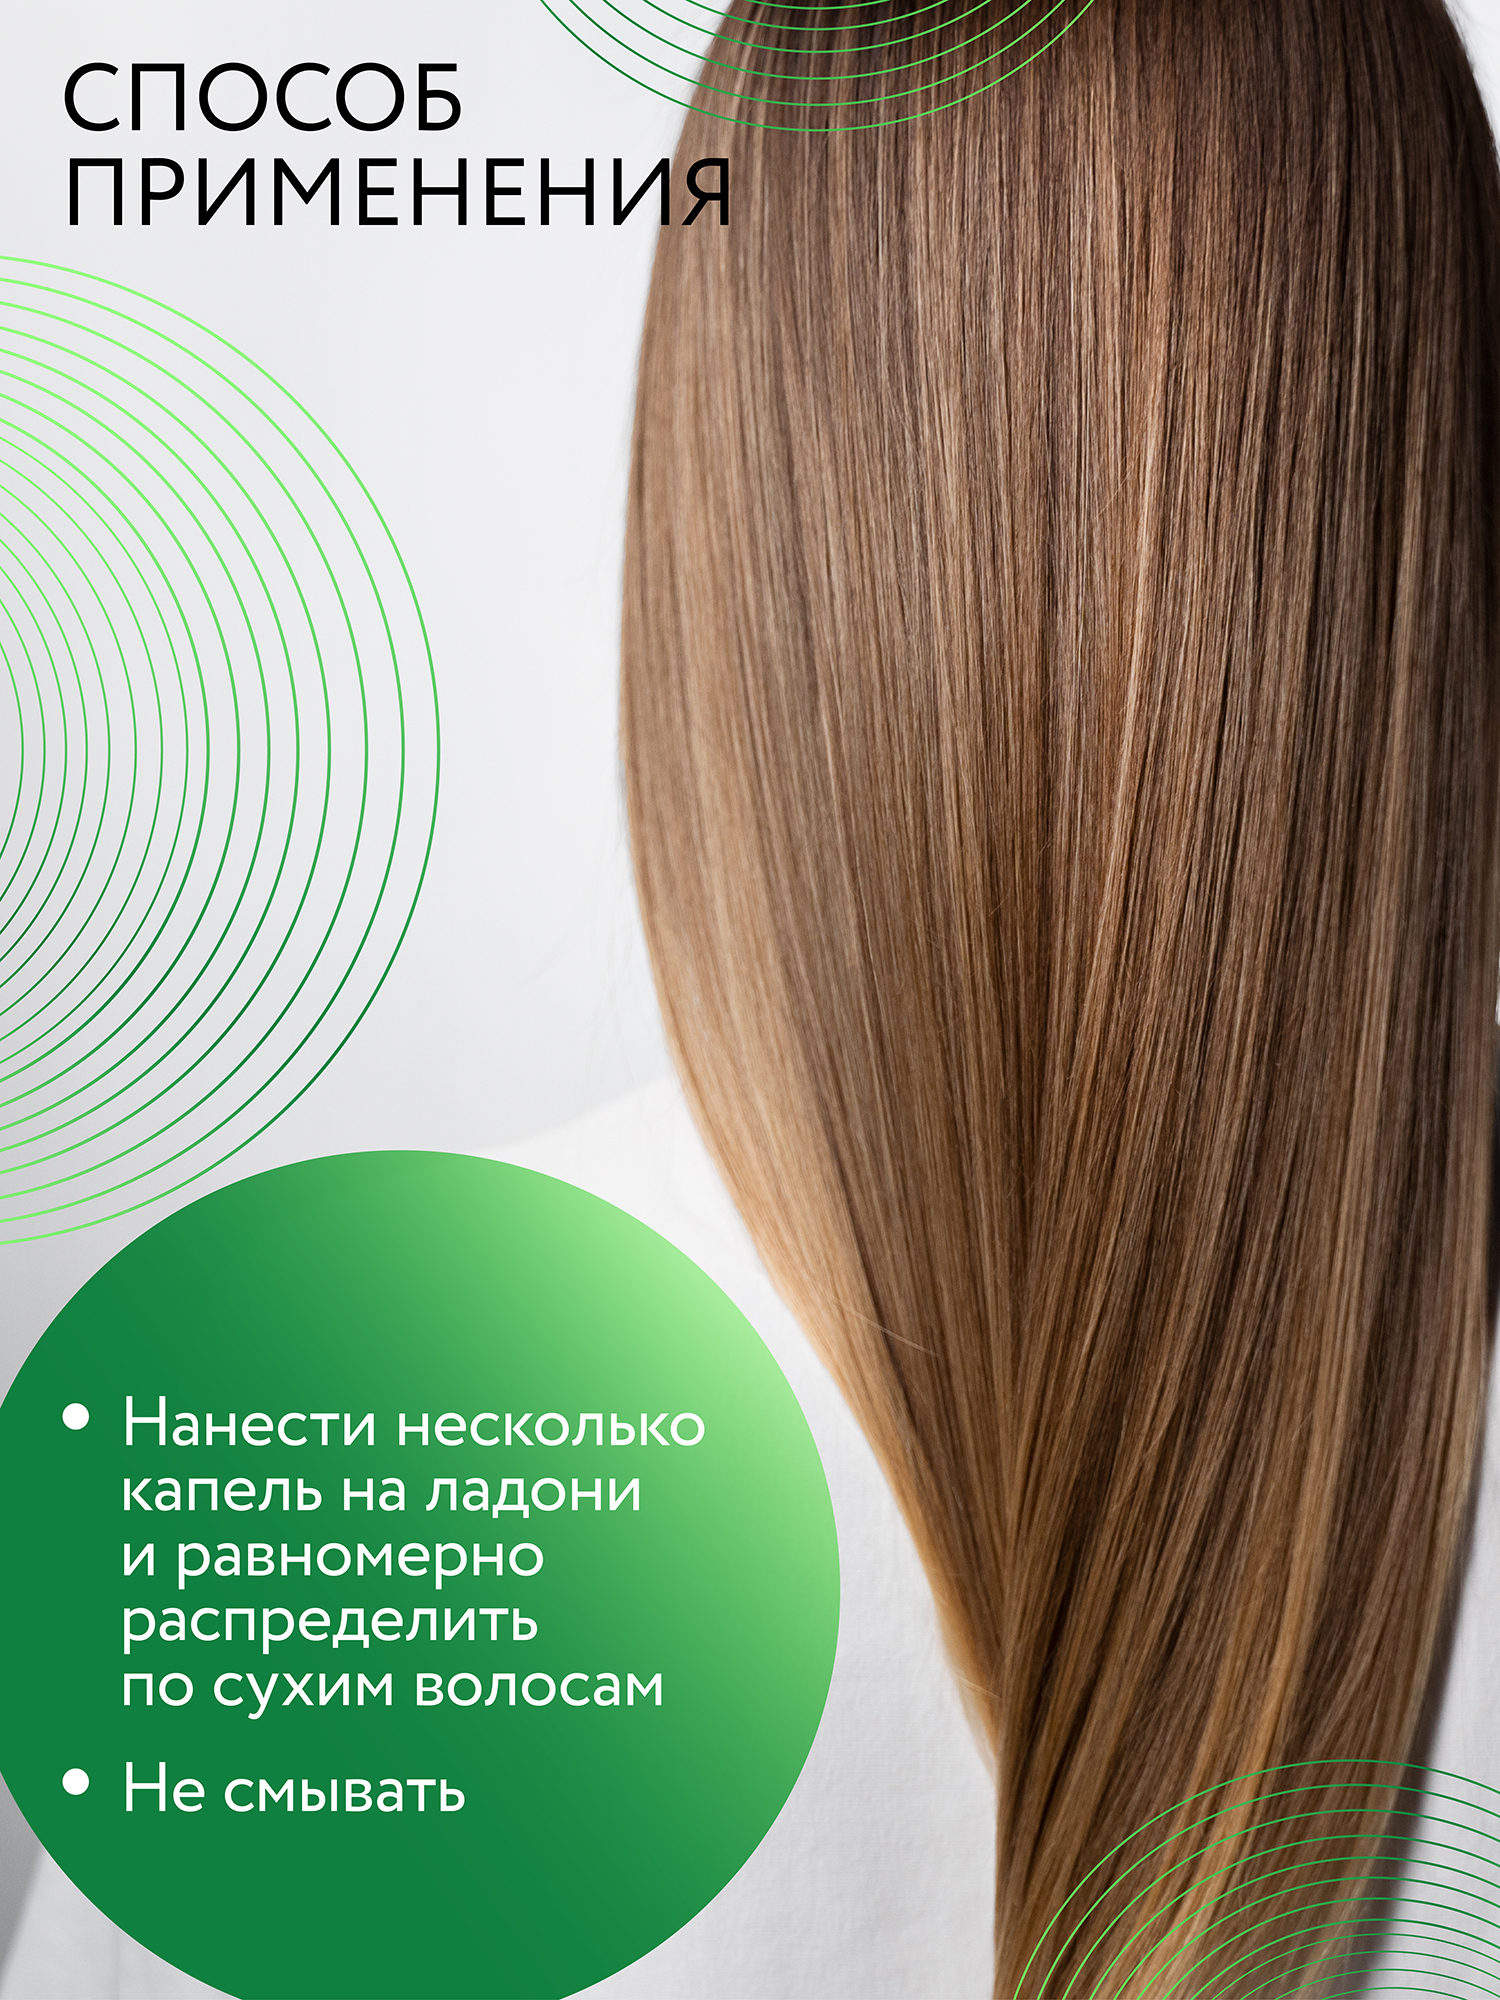 Сыворотка Ollin CARE для восстановления волос с экстрактом семян льна 50 мл - фото 4